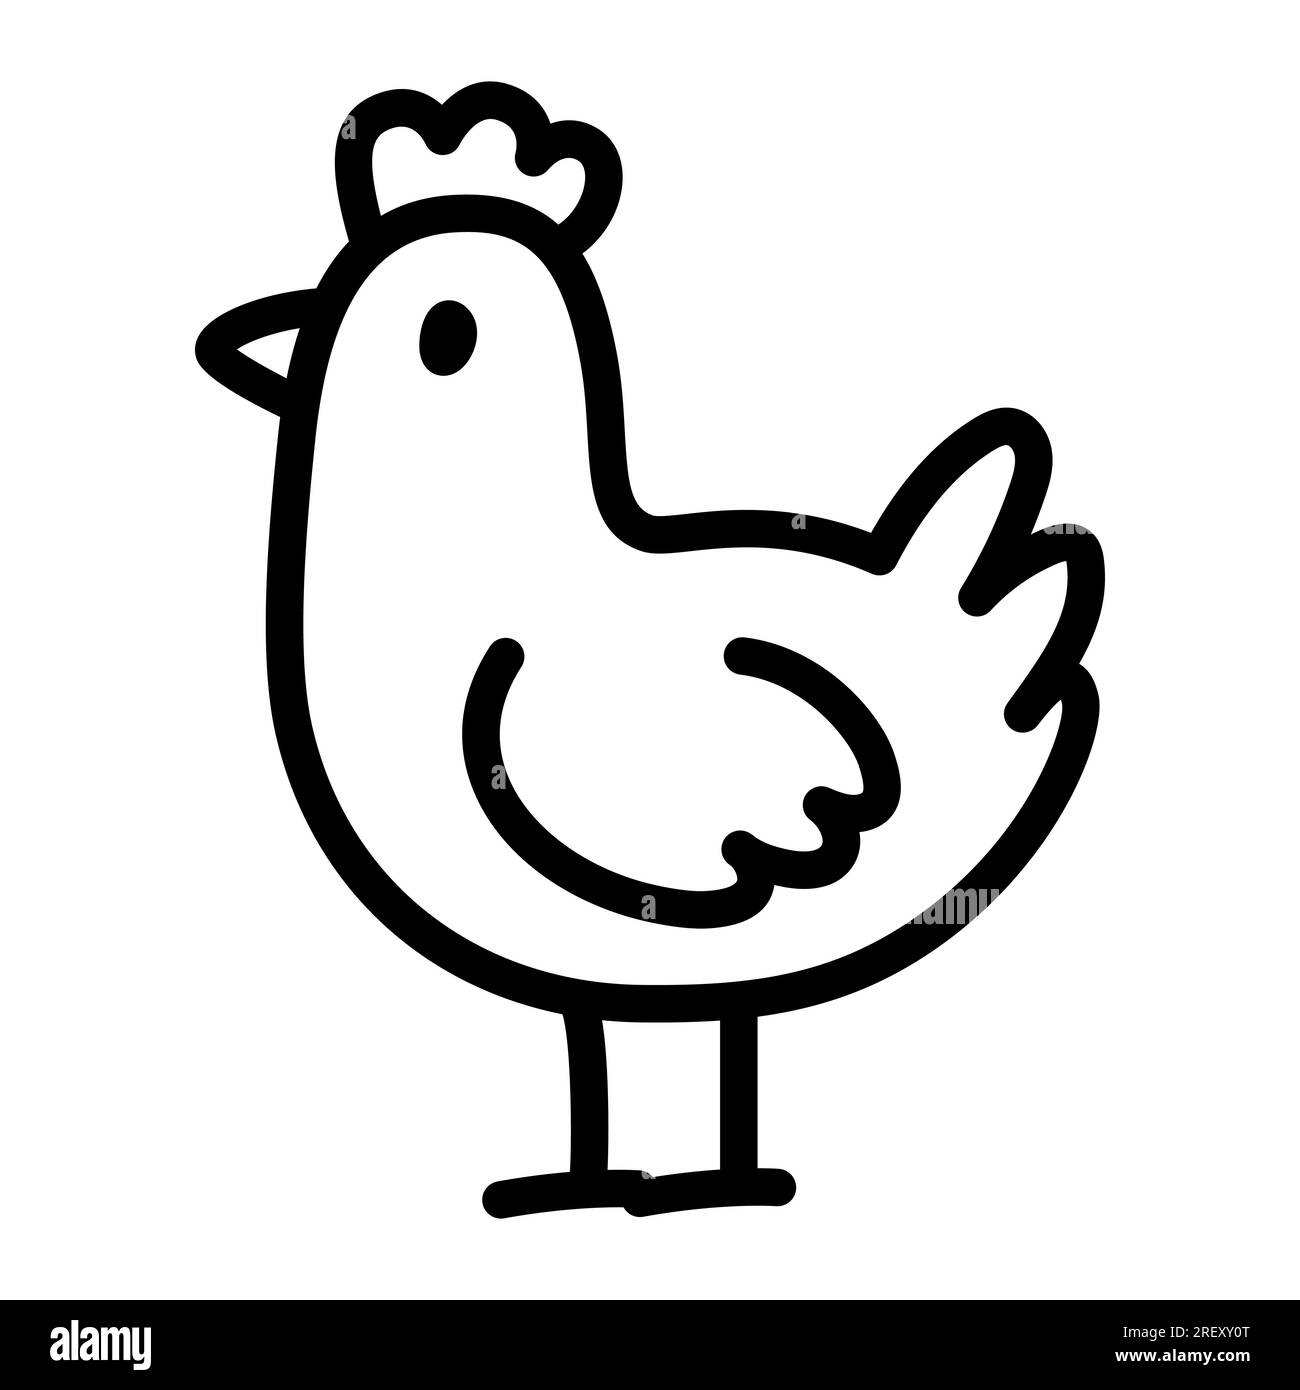 Hühnchen-Doodle-Zeichnung. Eine einfache Zeichentrickfigur eines Huhns. Hübsche handgezeichnete Vektordarstellung. Stock Vektor